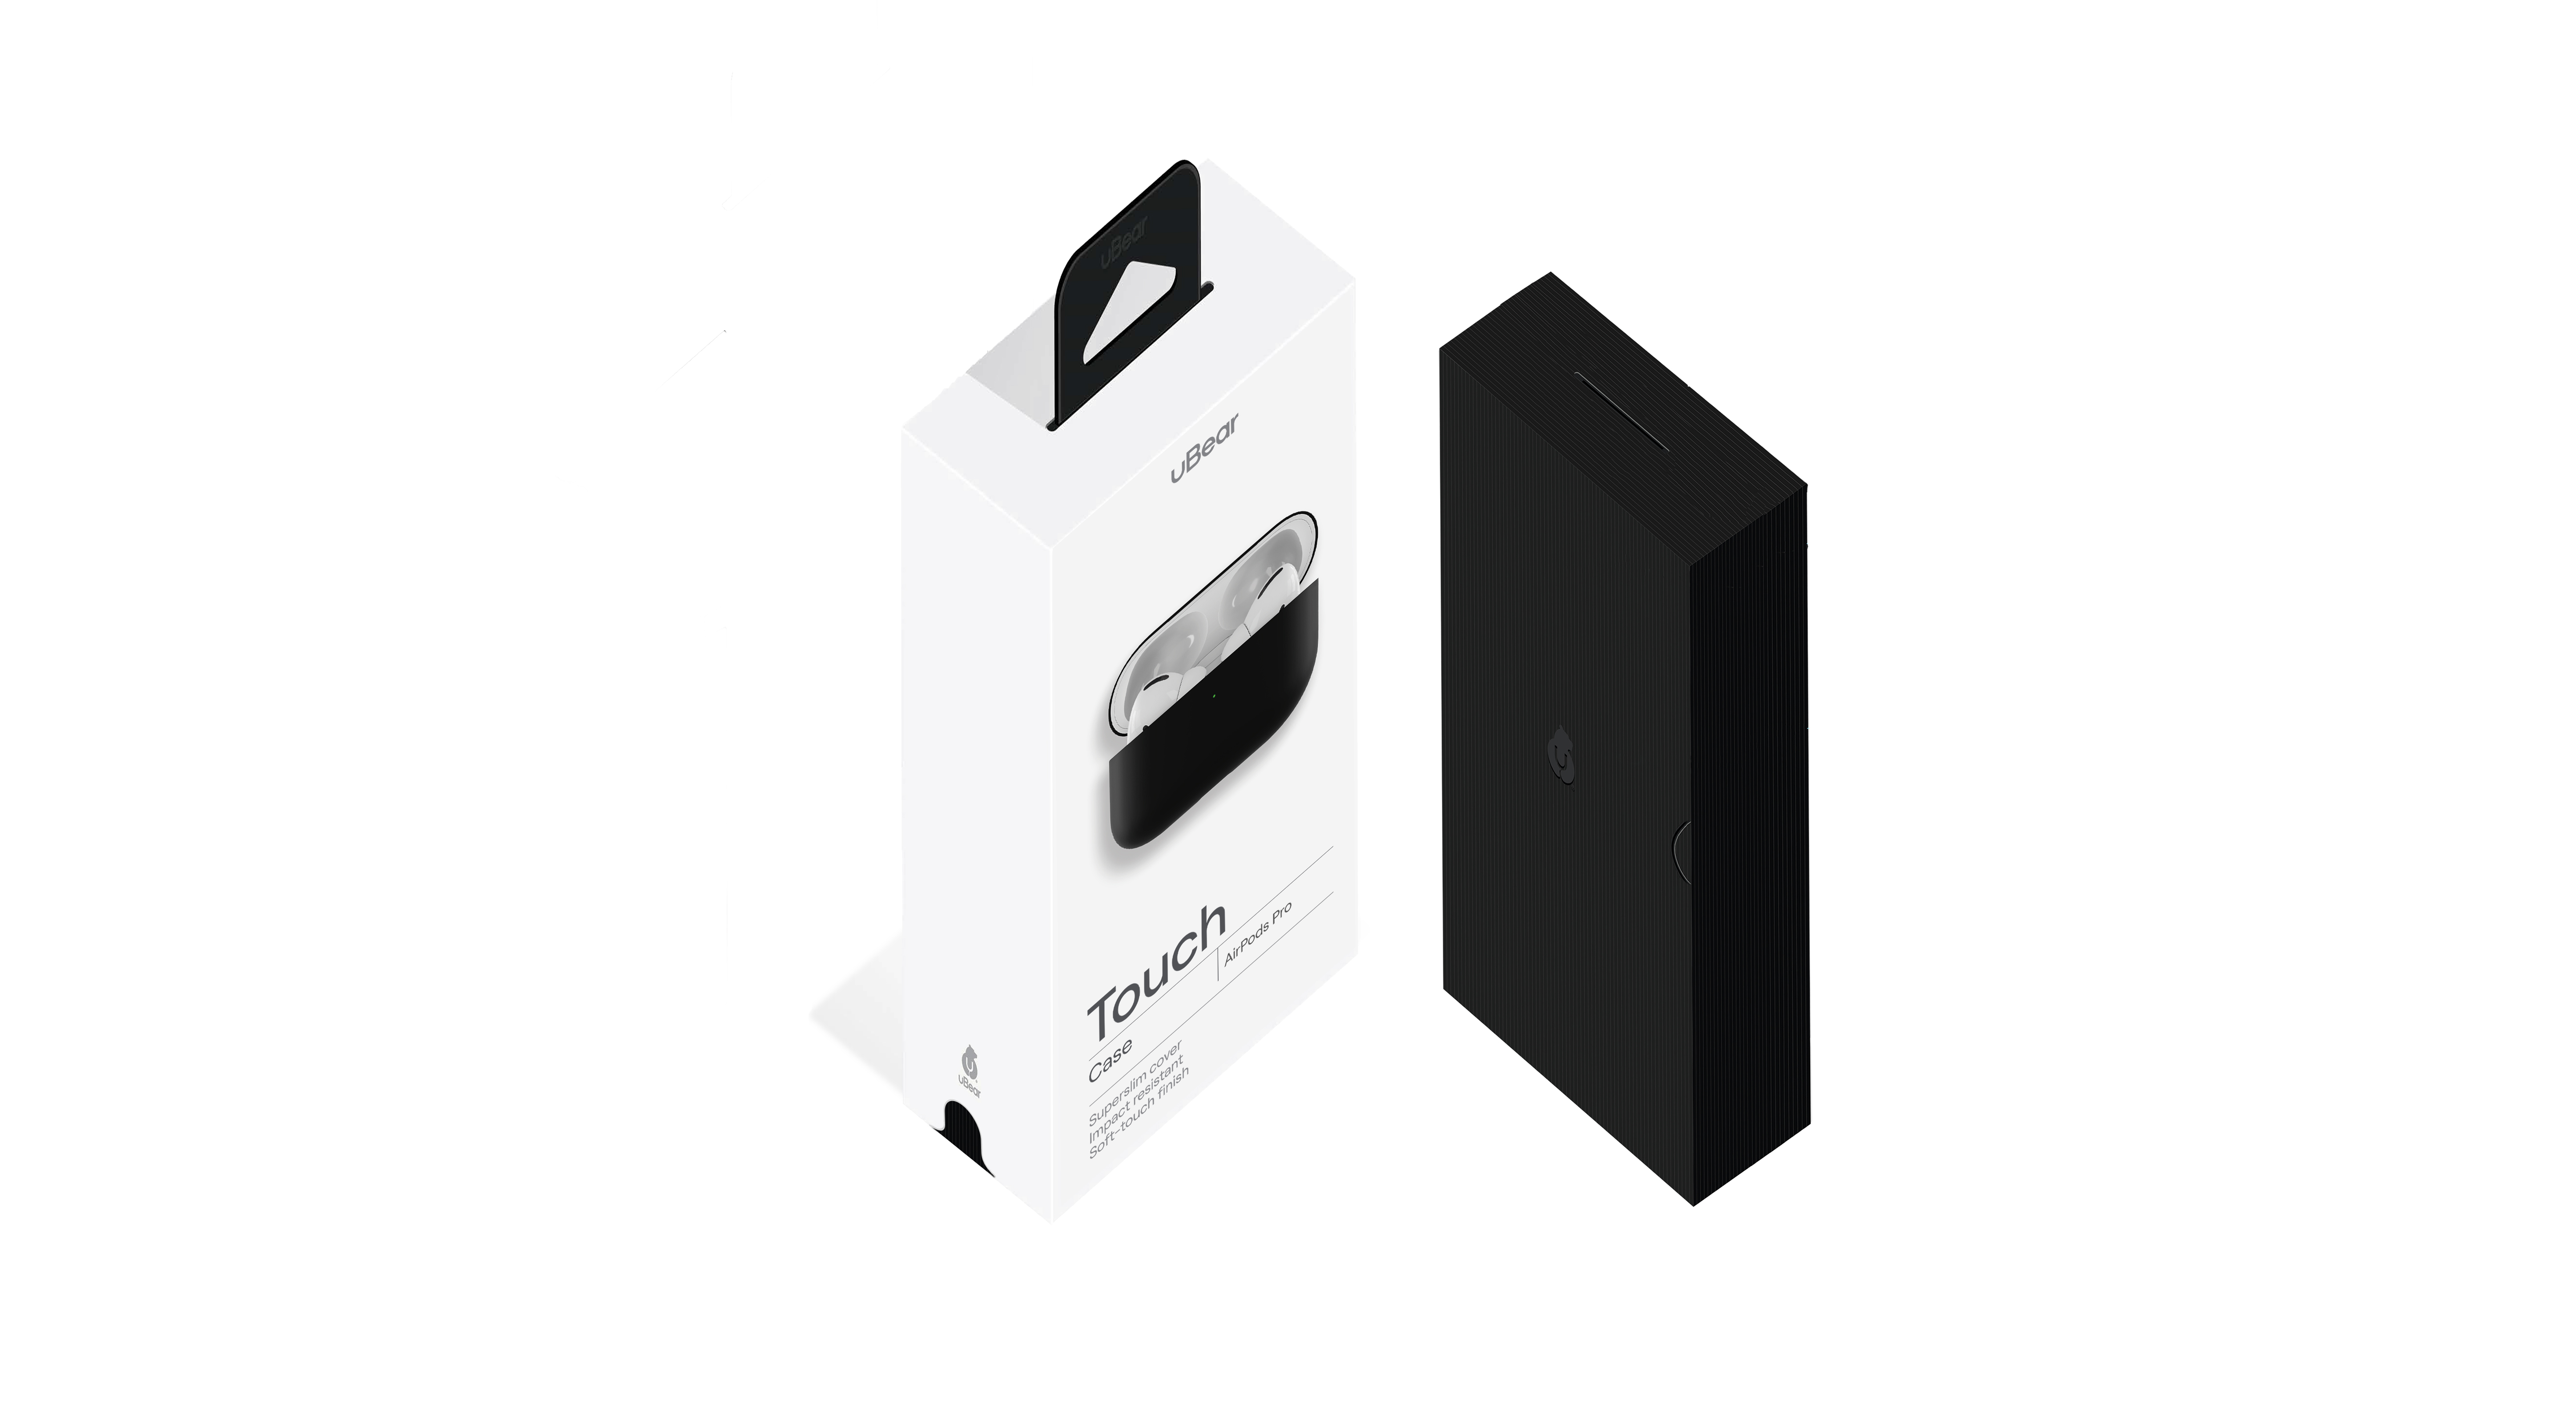 Ультратонкий силиконовый чехол Touch Case for AirPods Pro (всего 0,8 мм), чёрный